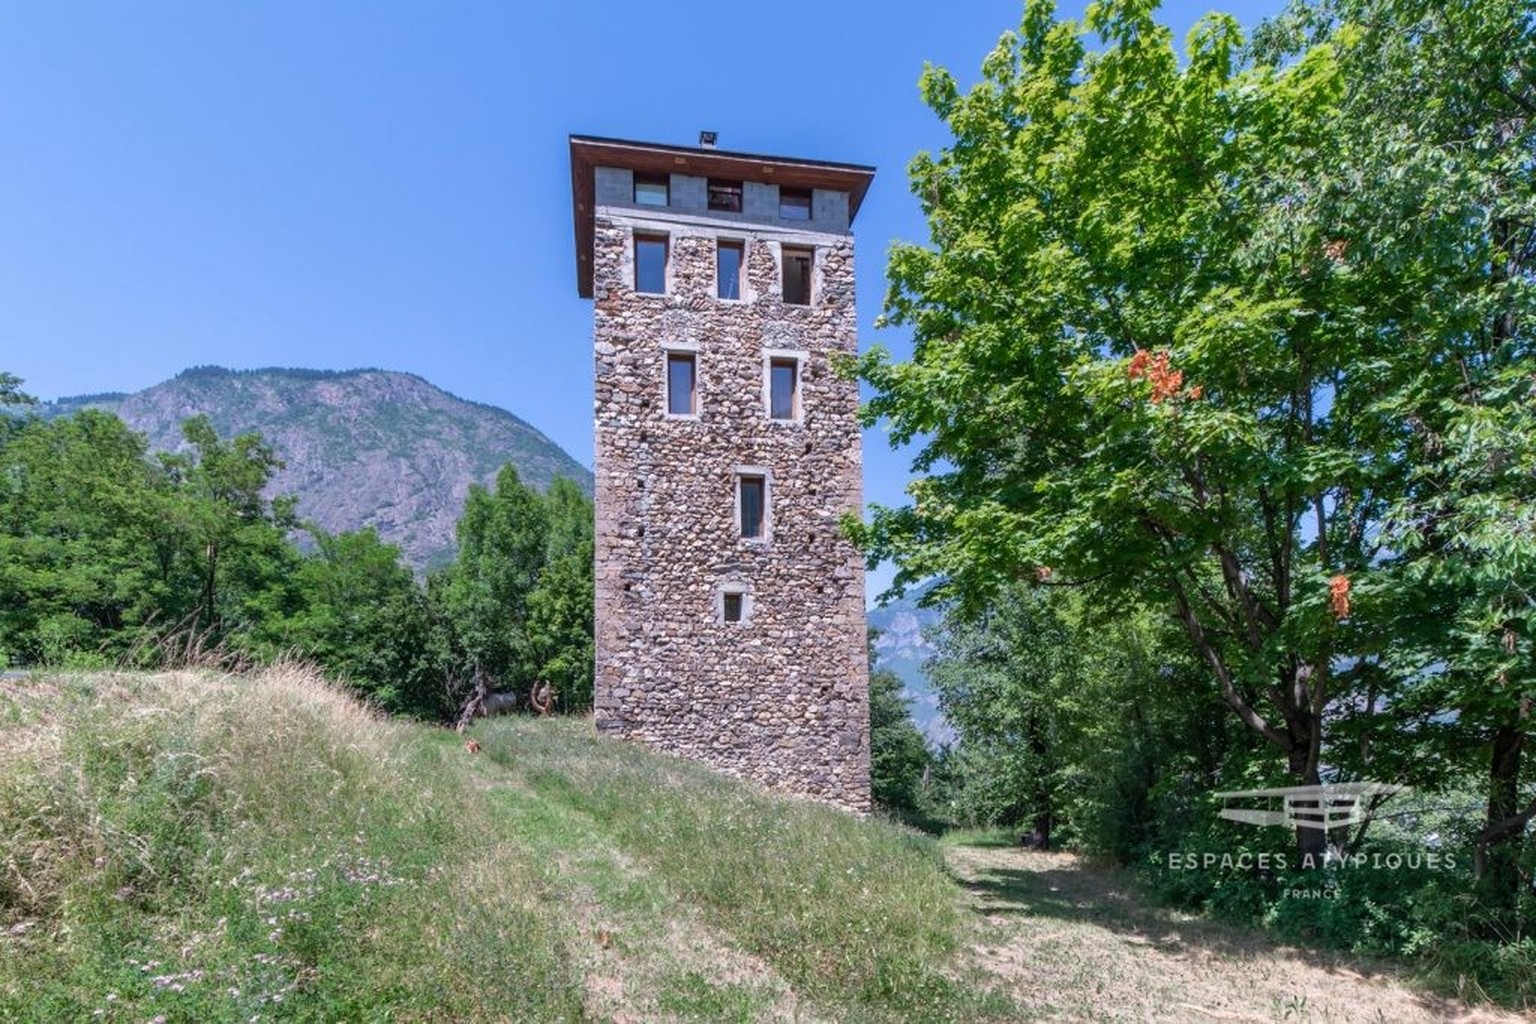 https://castleist.com/245k-savoie-france-medieval-watchtower-for-sale/ schloss zu verkaufen